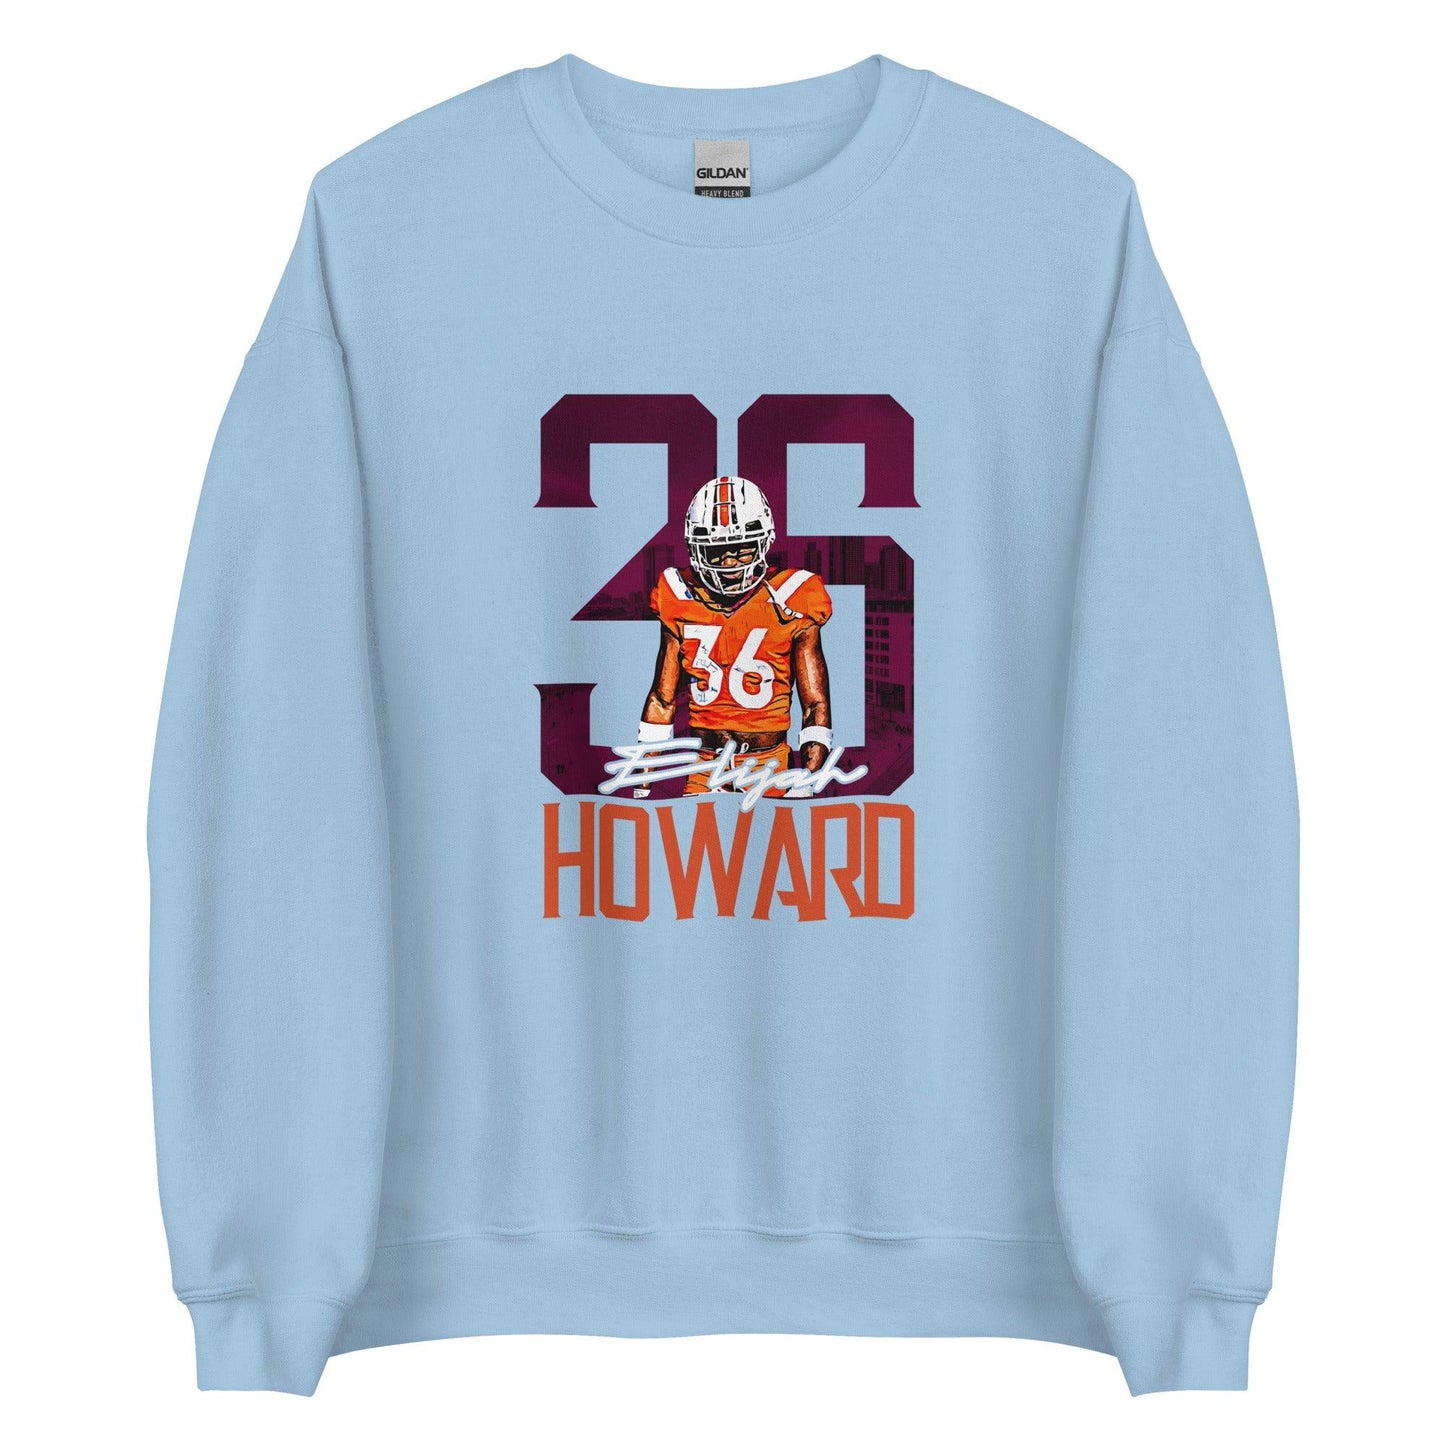 Elijah Howard "Gameday" Sweatshirt - Fan Arch